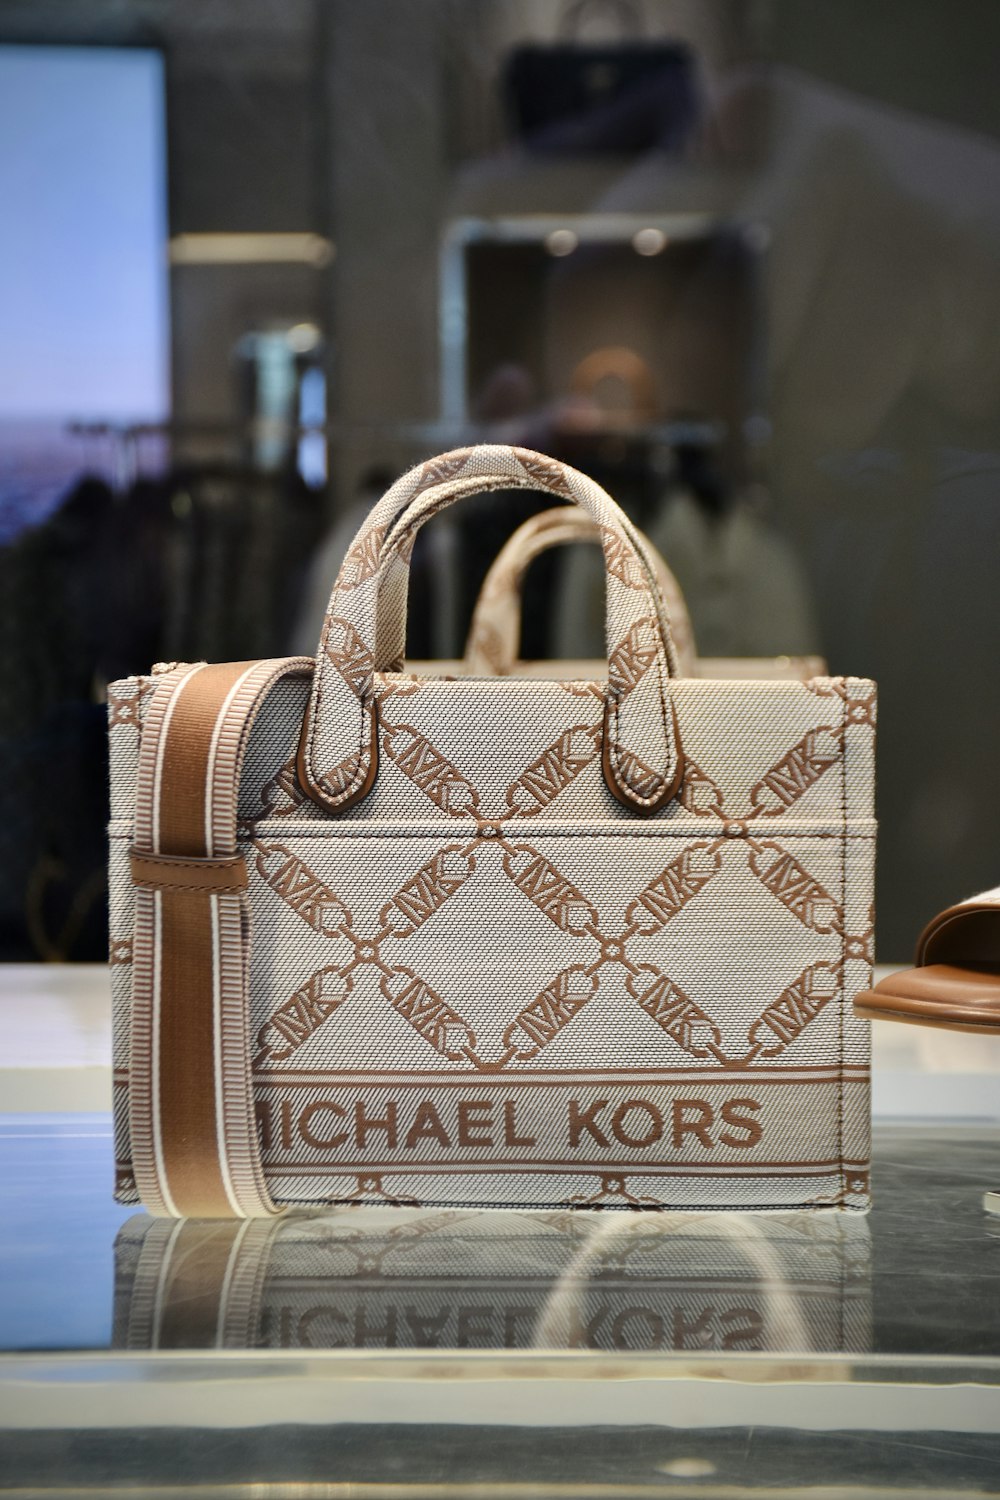 Un bolso de Michael Kors en exhibición en el escaparate de una tienda